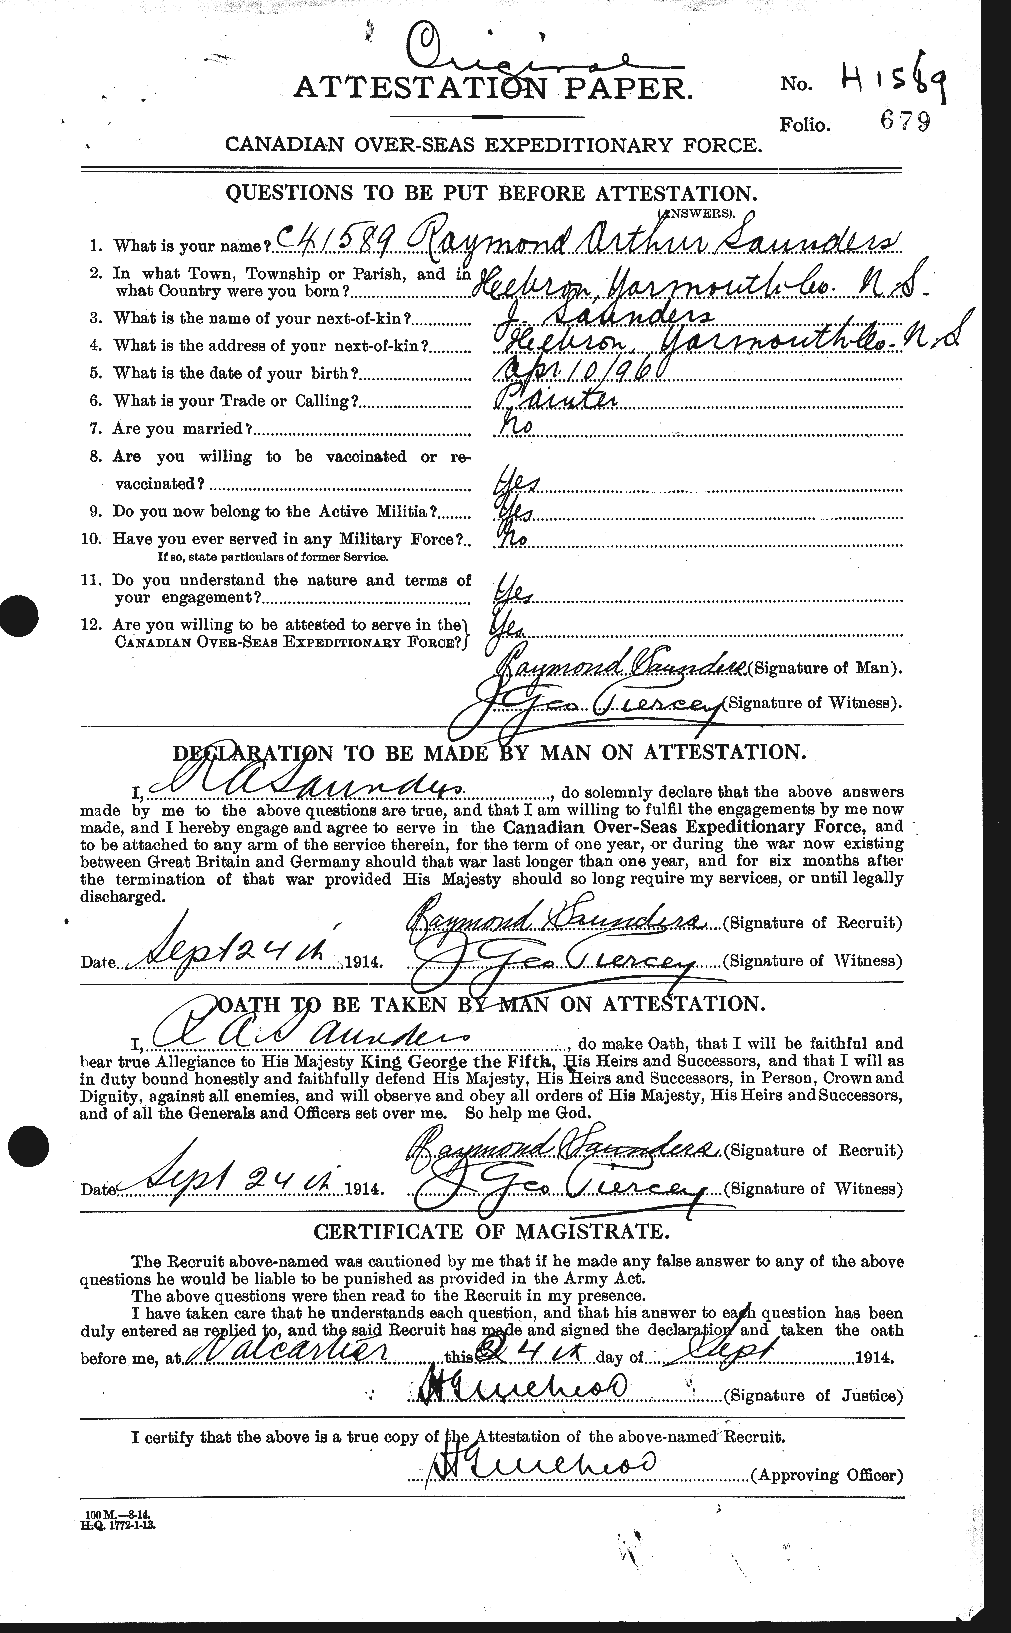 Dossiers du Personnel de la Première Guerre mondiale - CEC 080482a